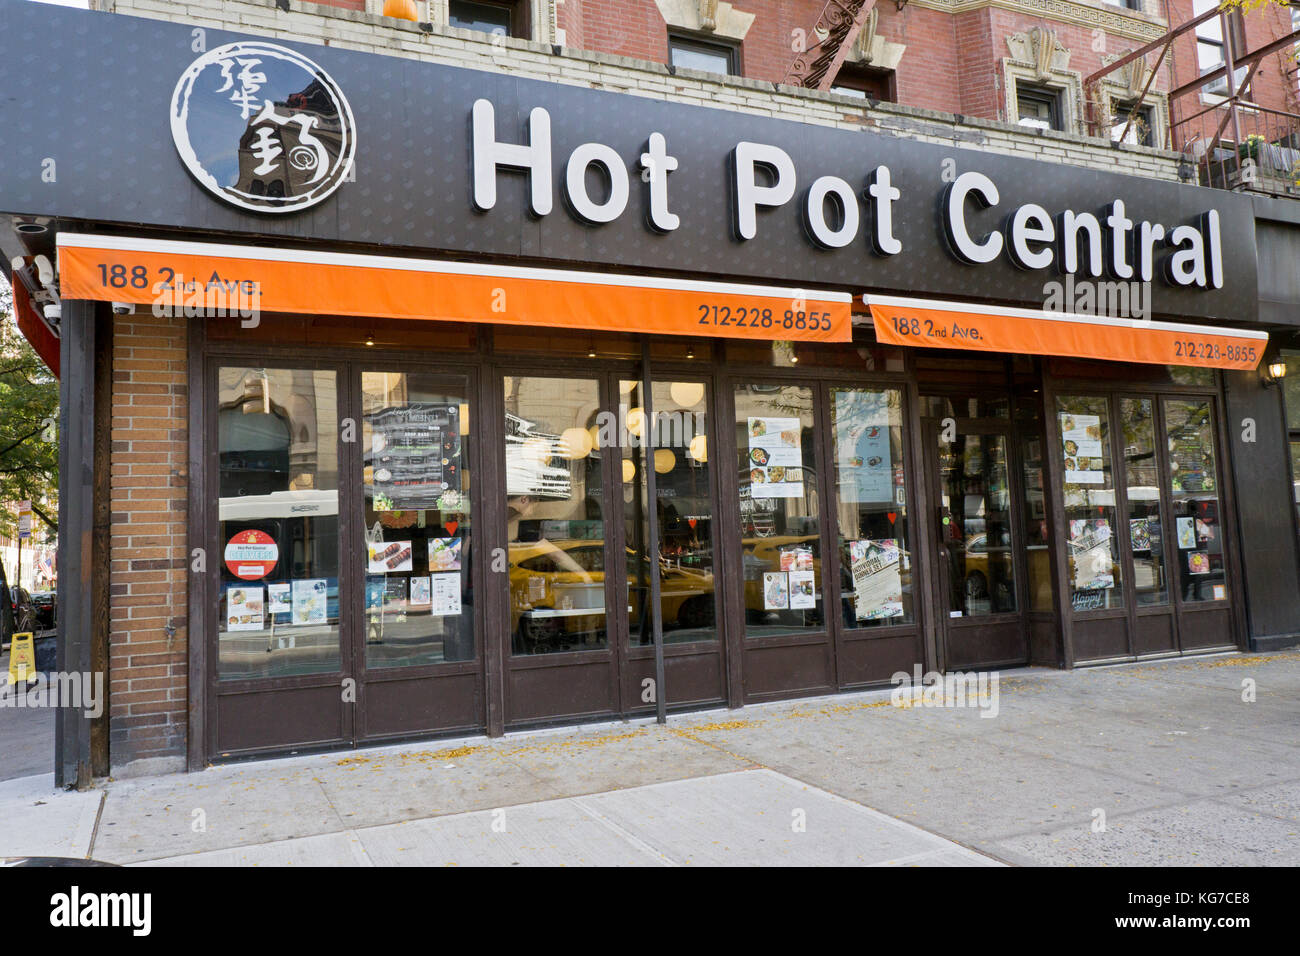 L'extérieur de la centrale Hot Pot restaurant chinois sur la 2e Avenue à New York. Ils se spécialisent dans la potée. soupes et quenelles Banque D'Images